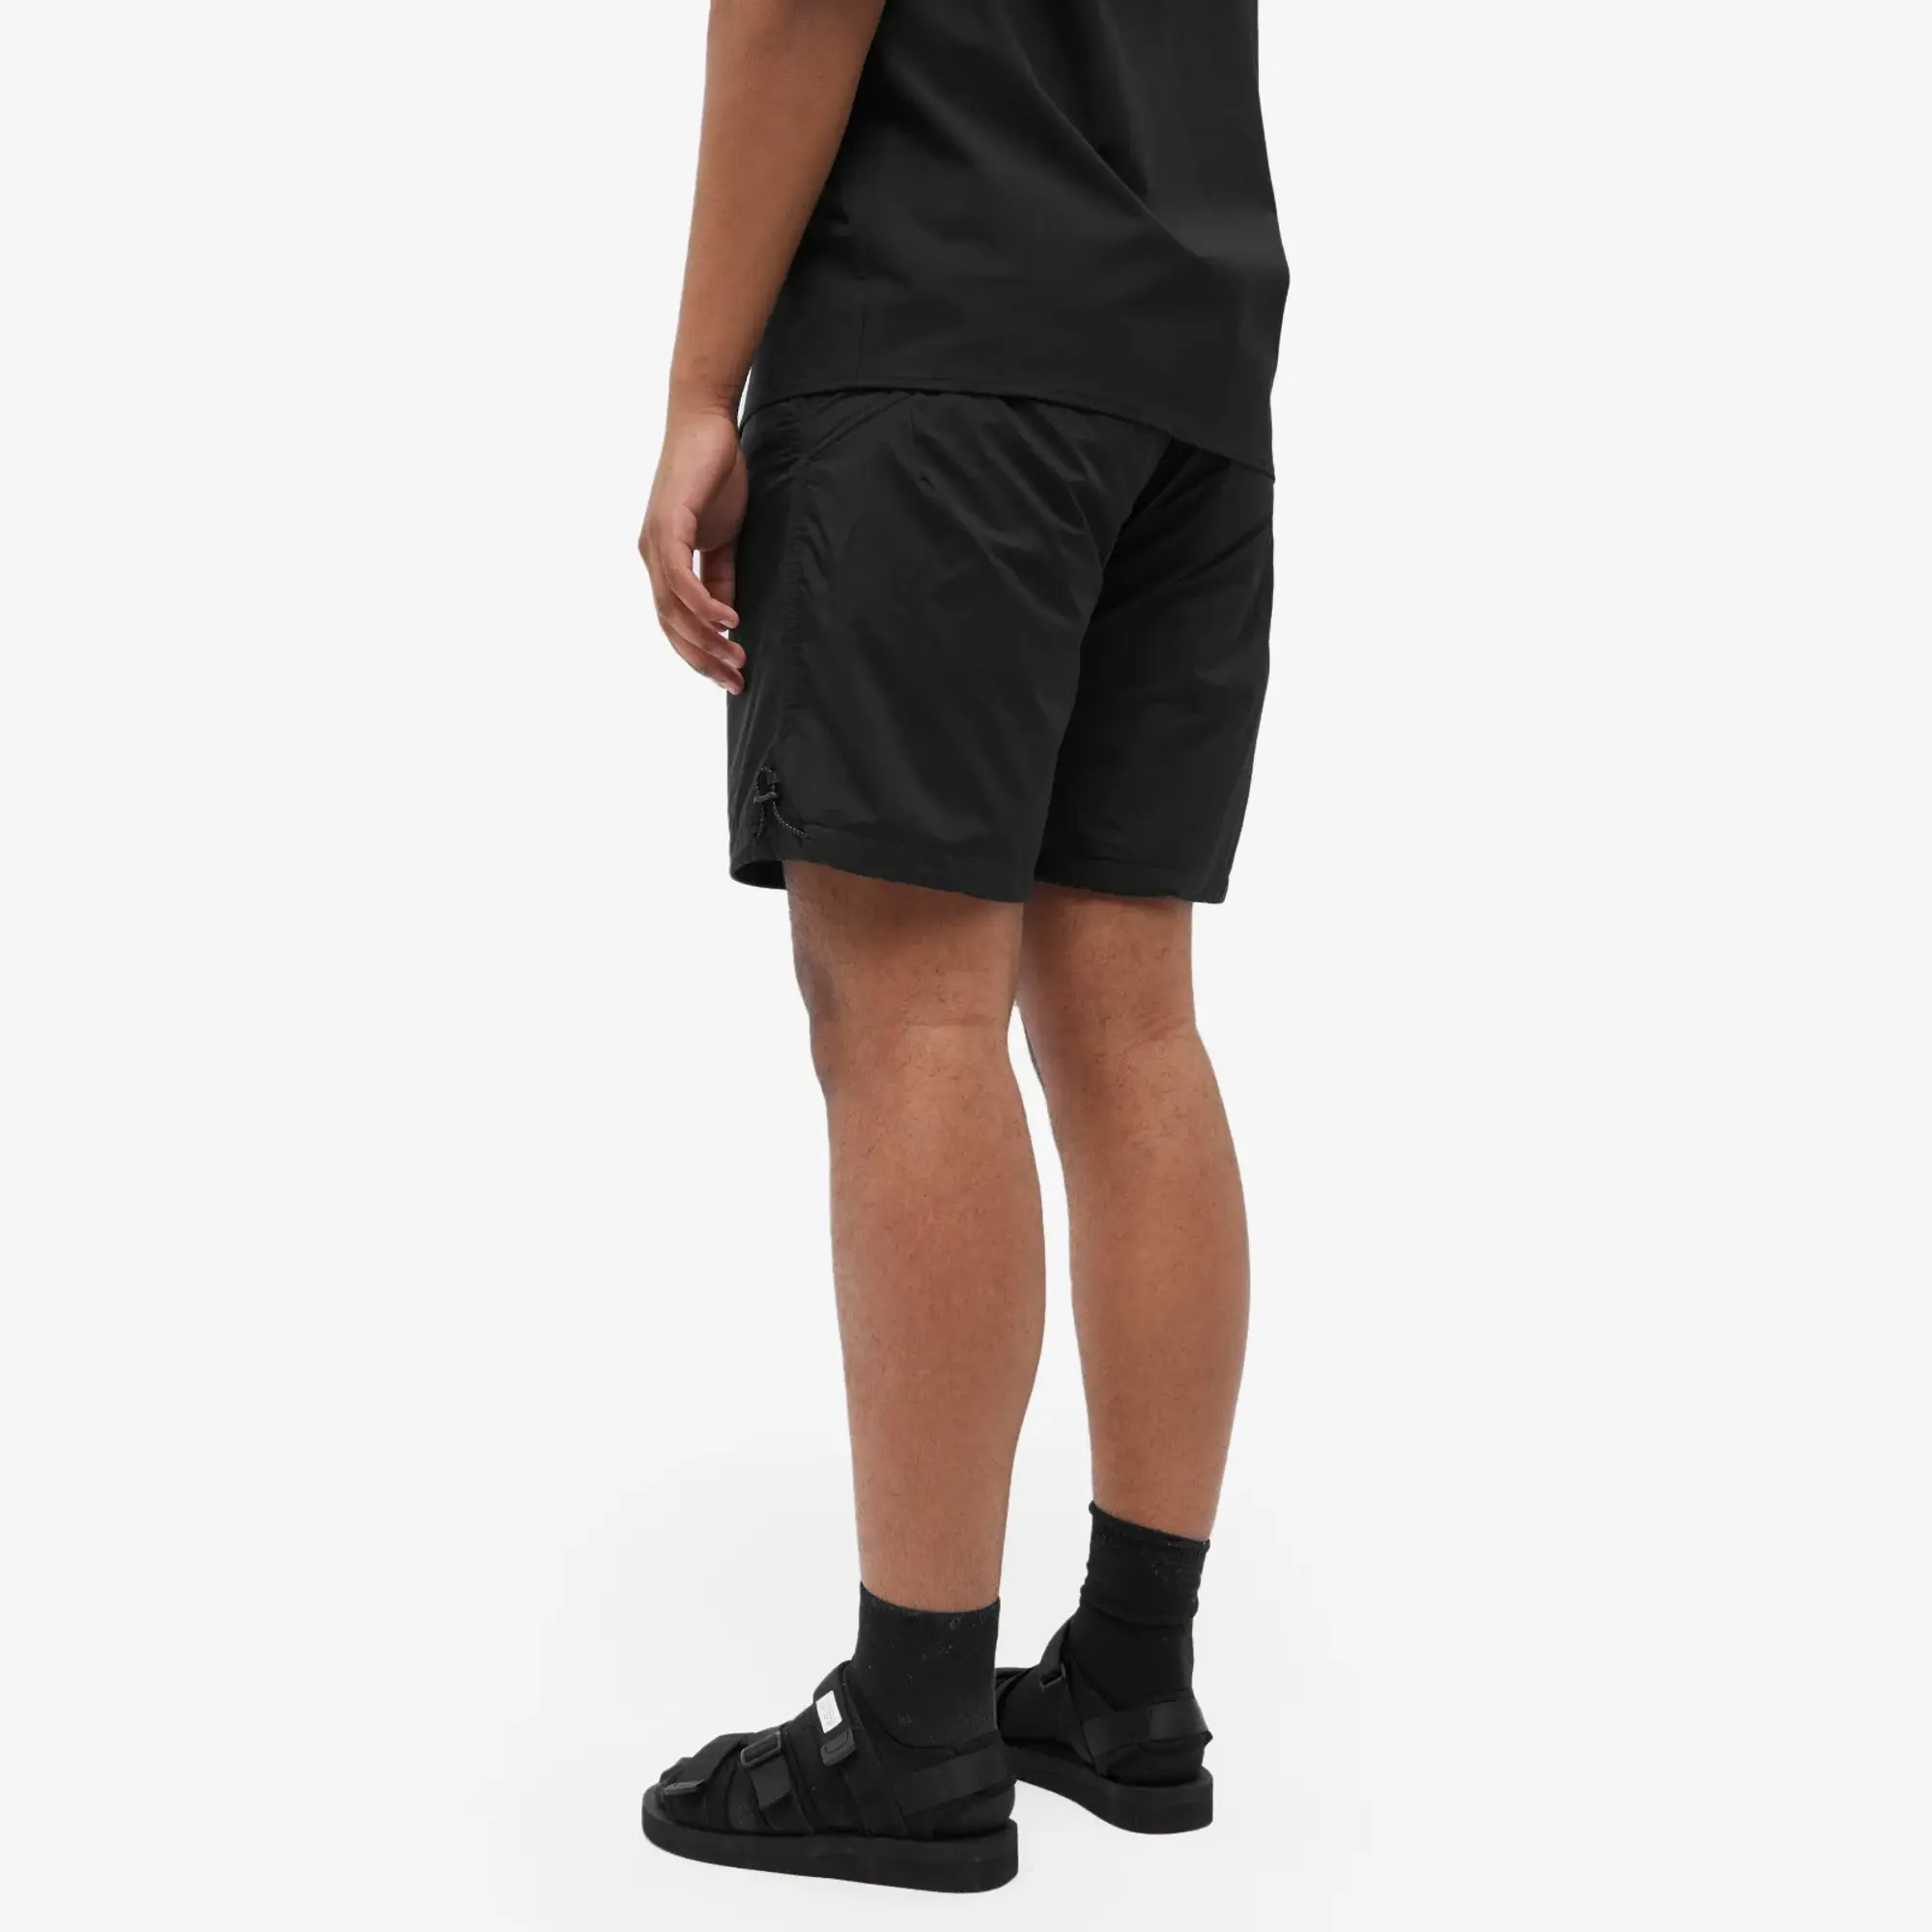 Quick F/CE. Men's Pertex Tech Shorts Black